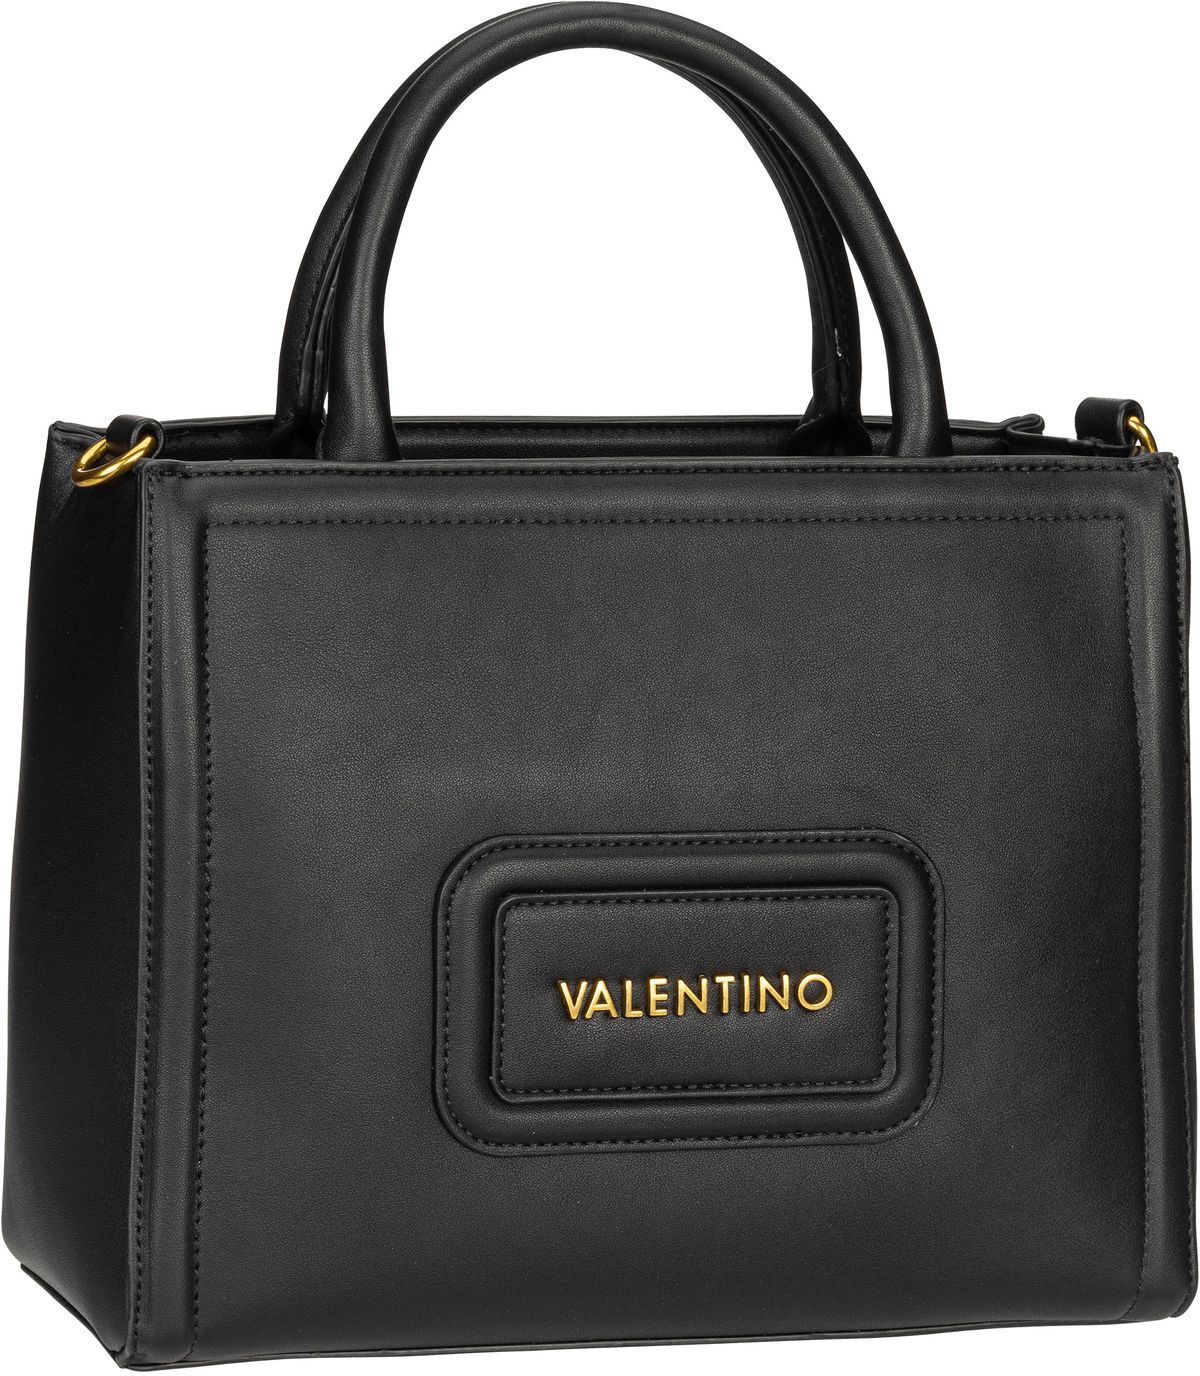 Valentino Handtasche Snowy RE Shopping M04 Nero (6.4 Liter)  - Onlineshop Taschenkaufhaus